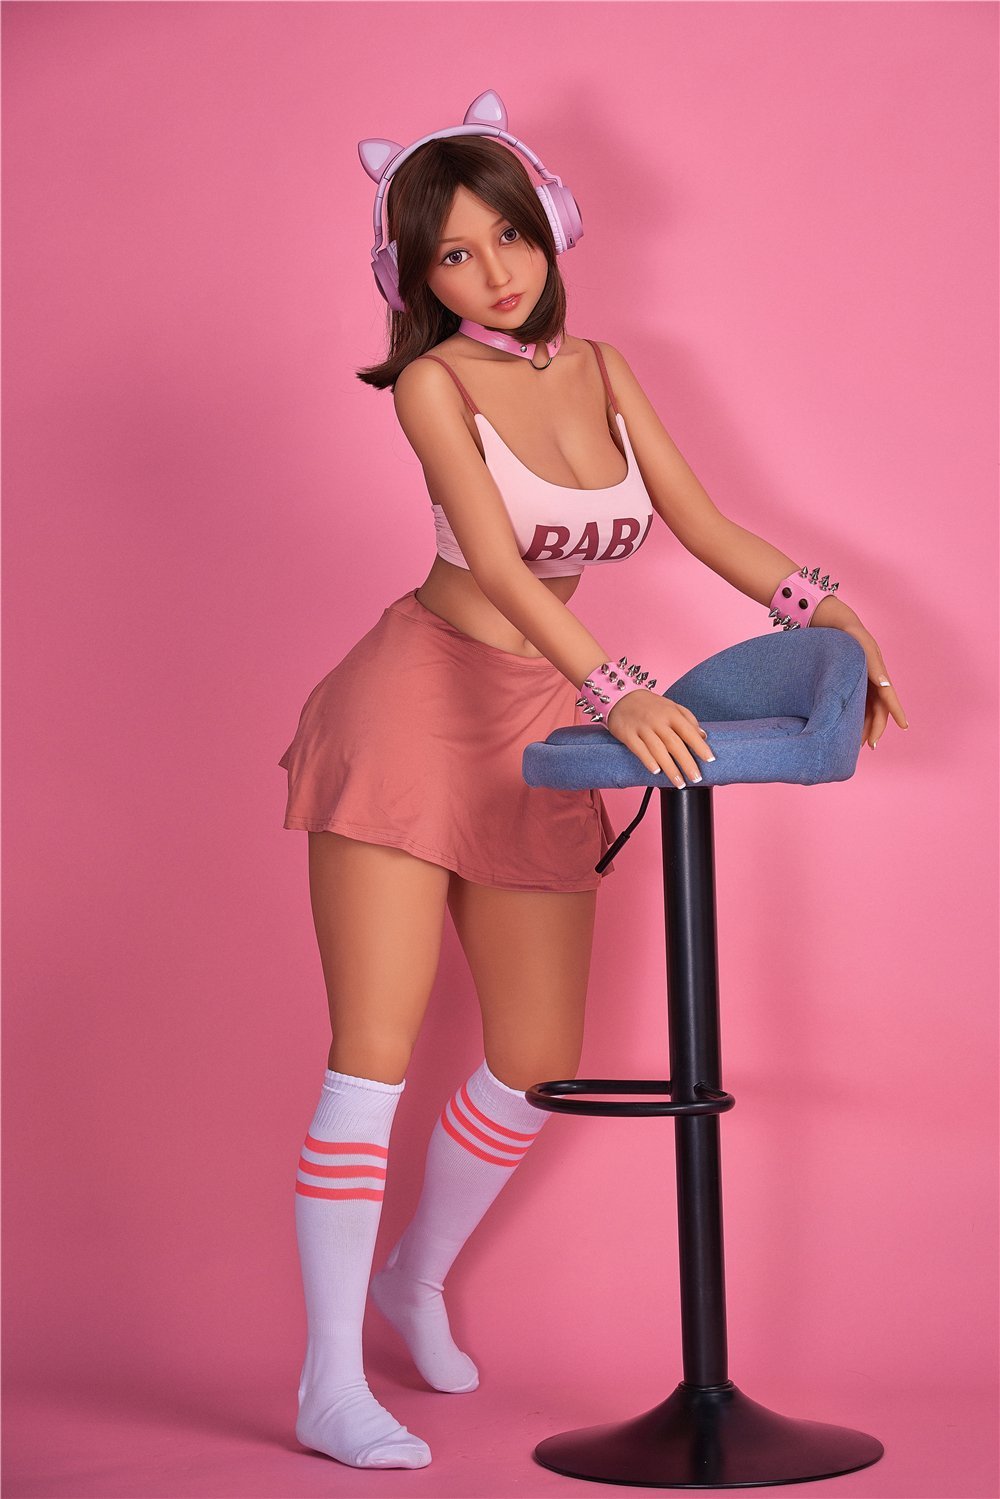 Irontechdoll Real Teen Sex Doll Miyin 153cm